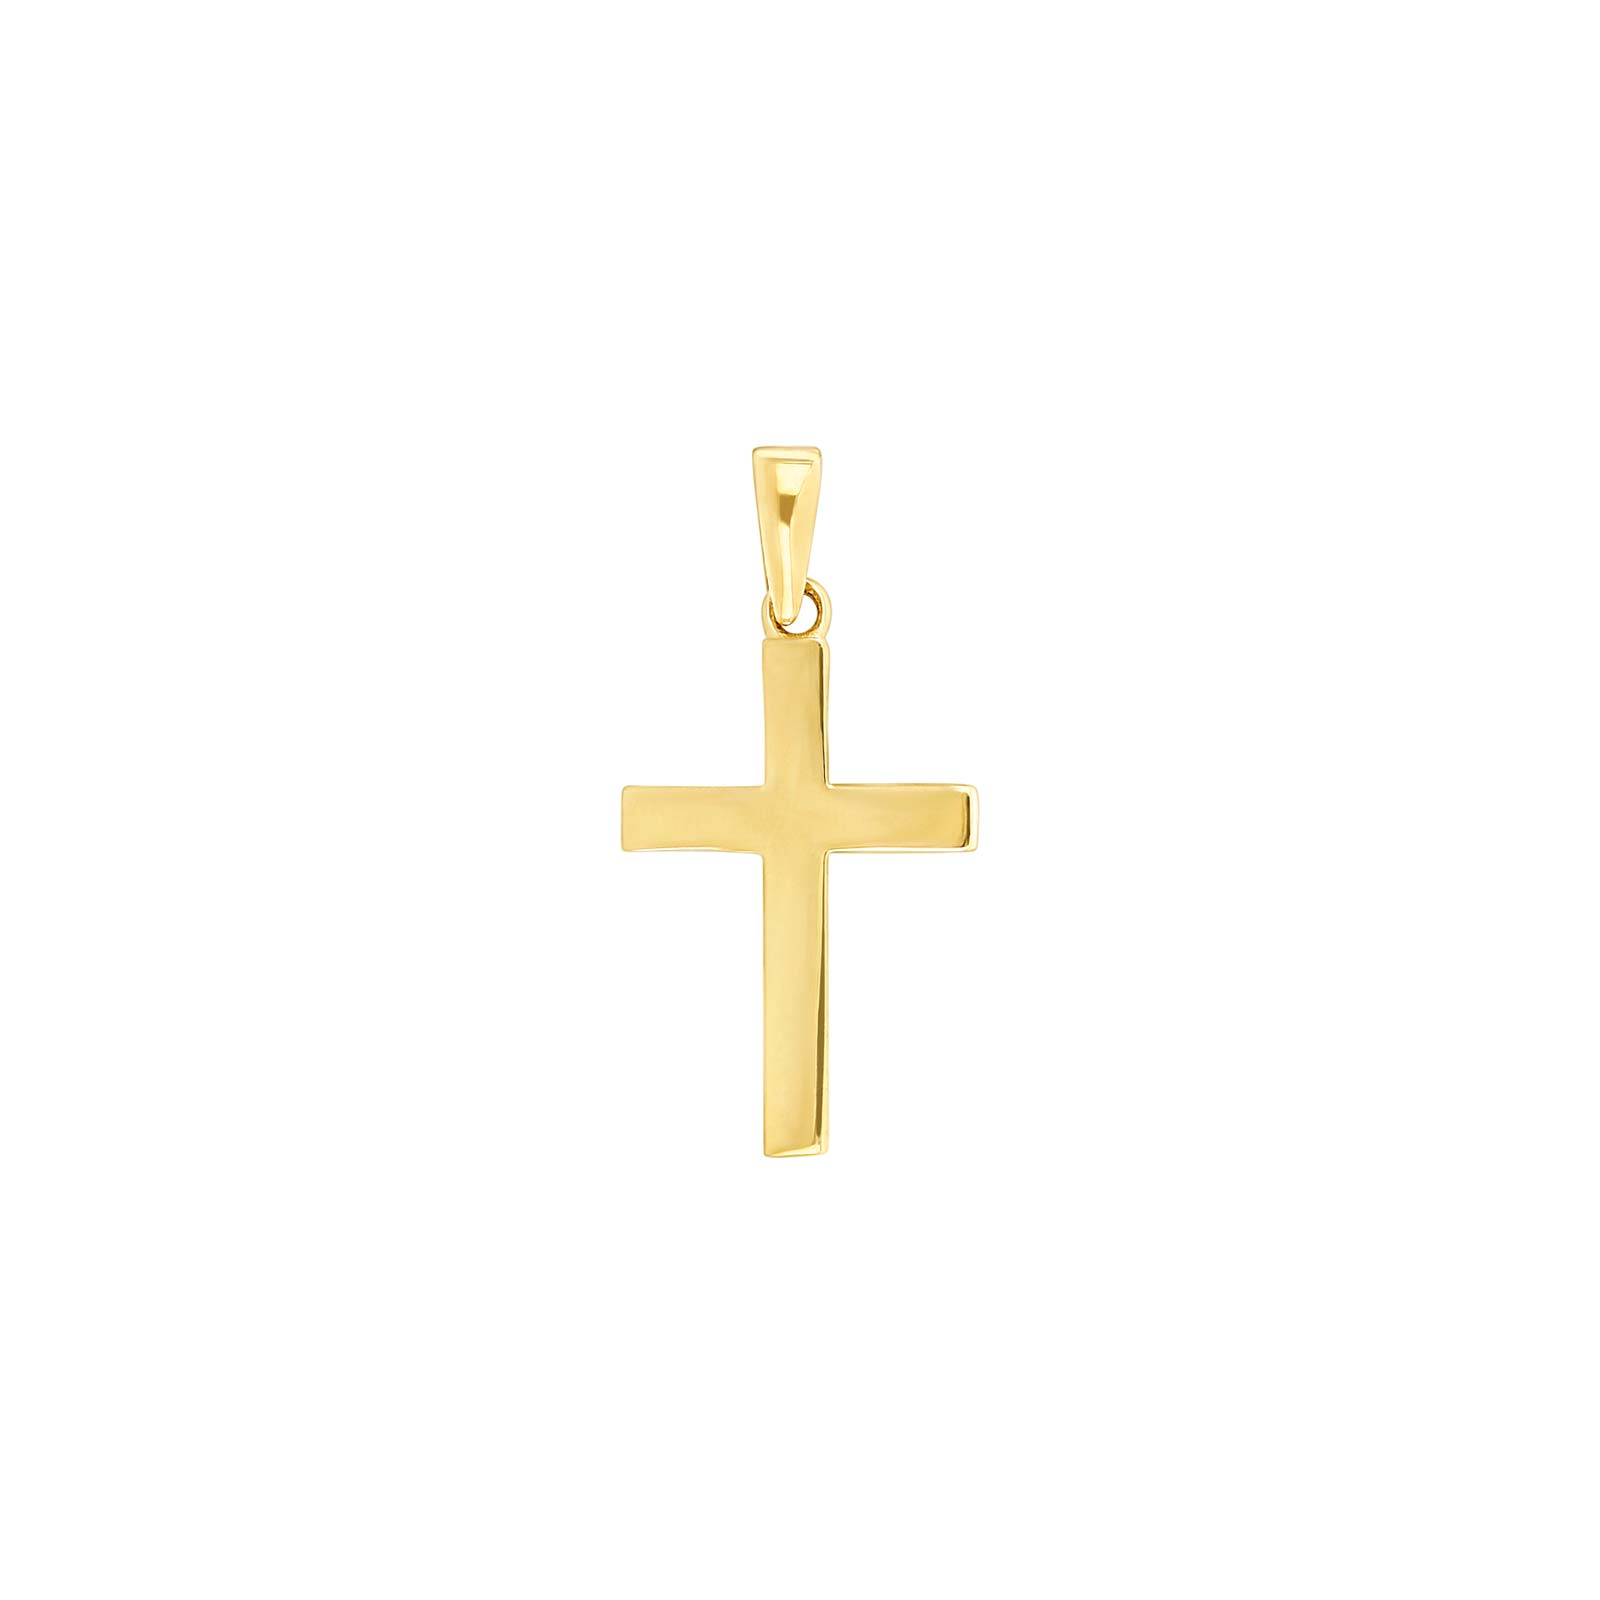 14kt. guld kors massiv 19mm, fra Siersbøl